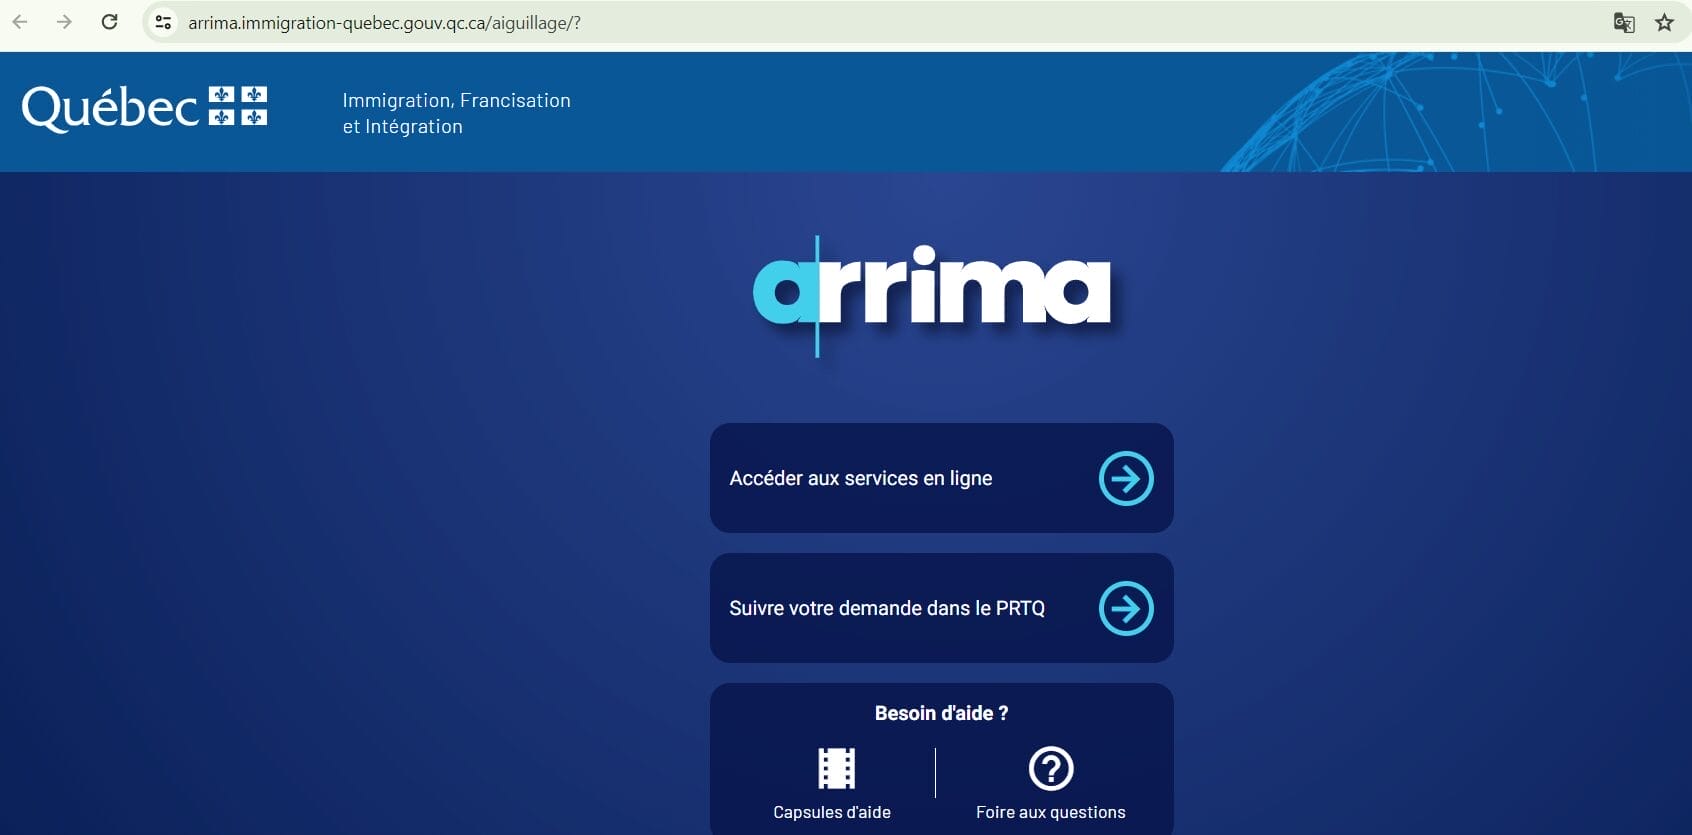 Arrima là hệ thống quản lý hồ sơ nhập cư diện lao động tay nghề của tỉnh bang Quebec, hoạt động tương tự hệ thống Express Entry của Liên bang